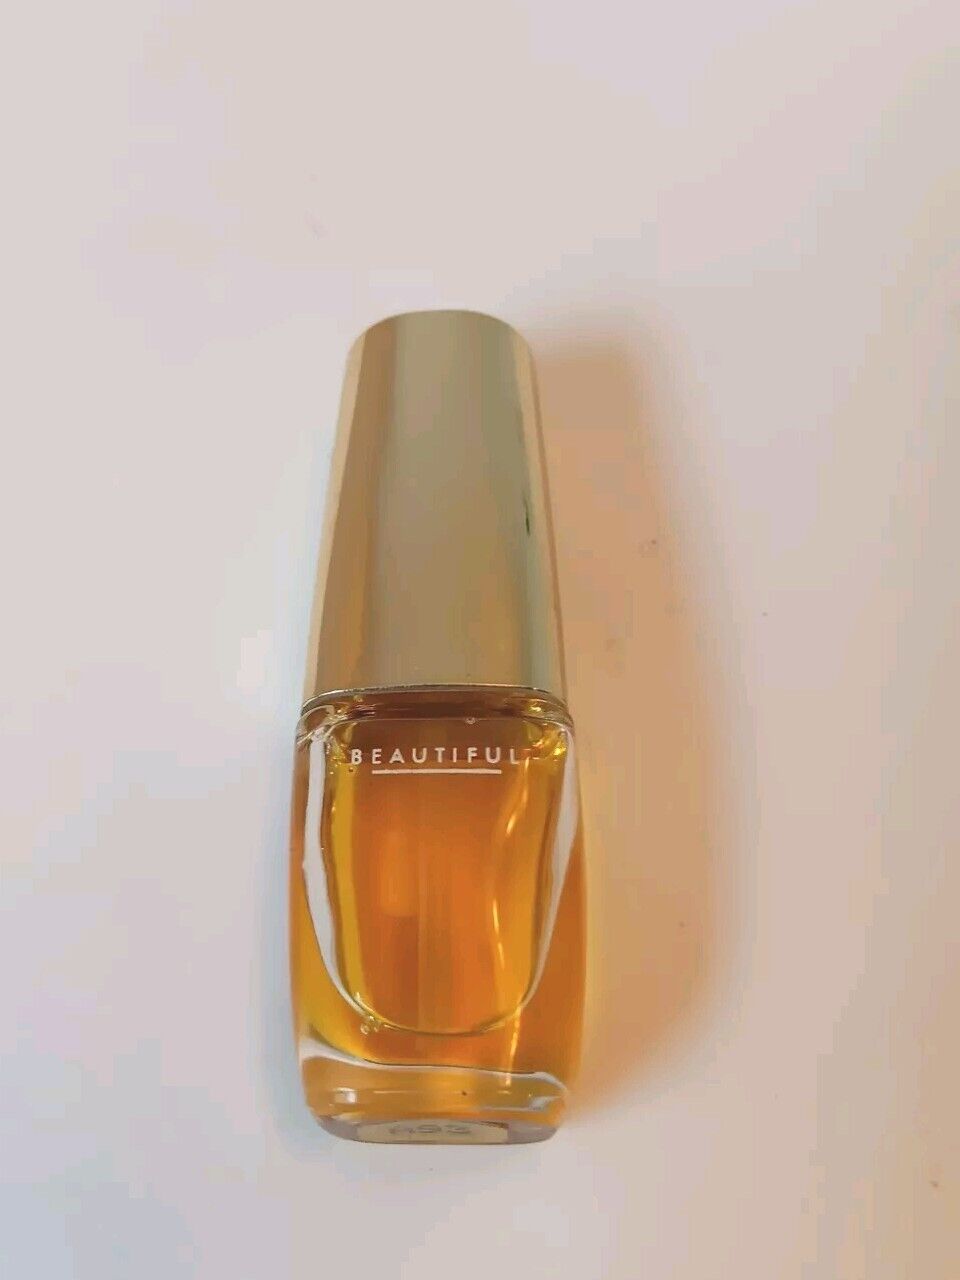 Vintage Estee Lauder Beautiful Eau de Parfum Spray 1 oz Perfume Travel Spray 